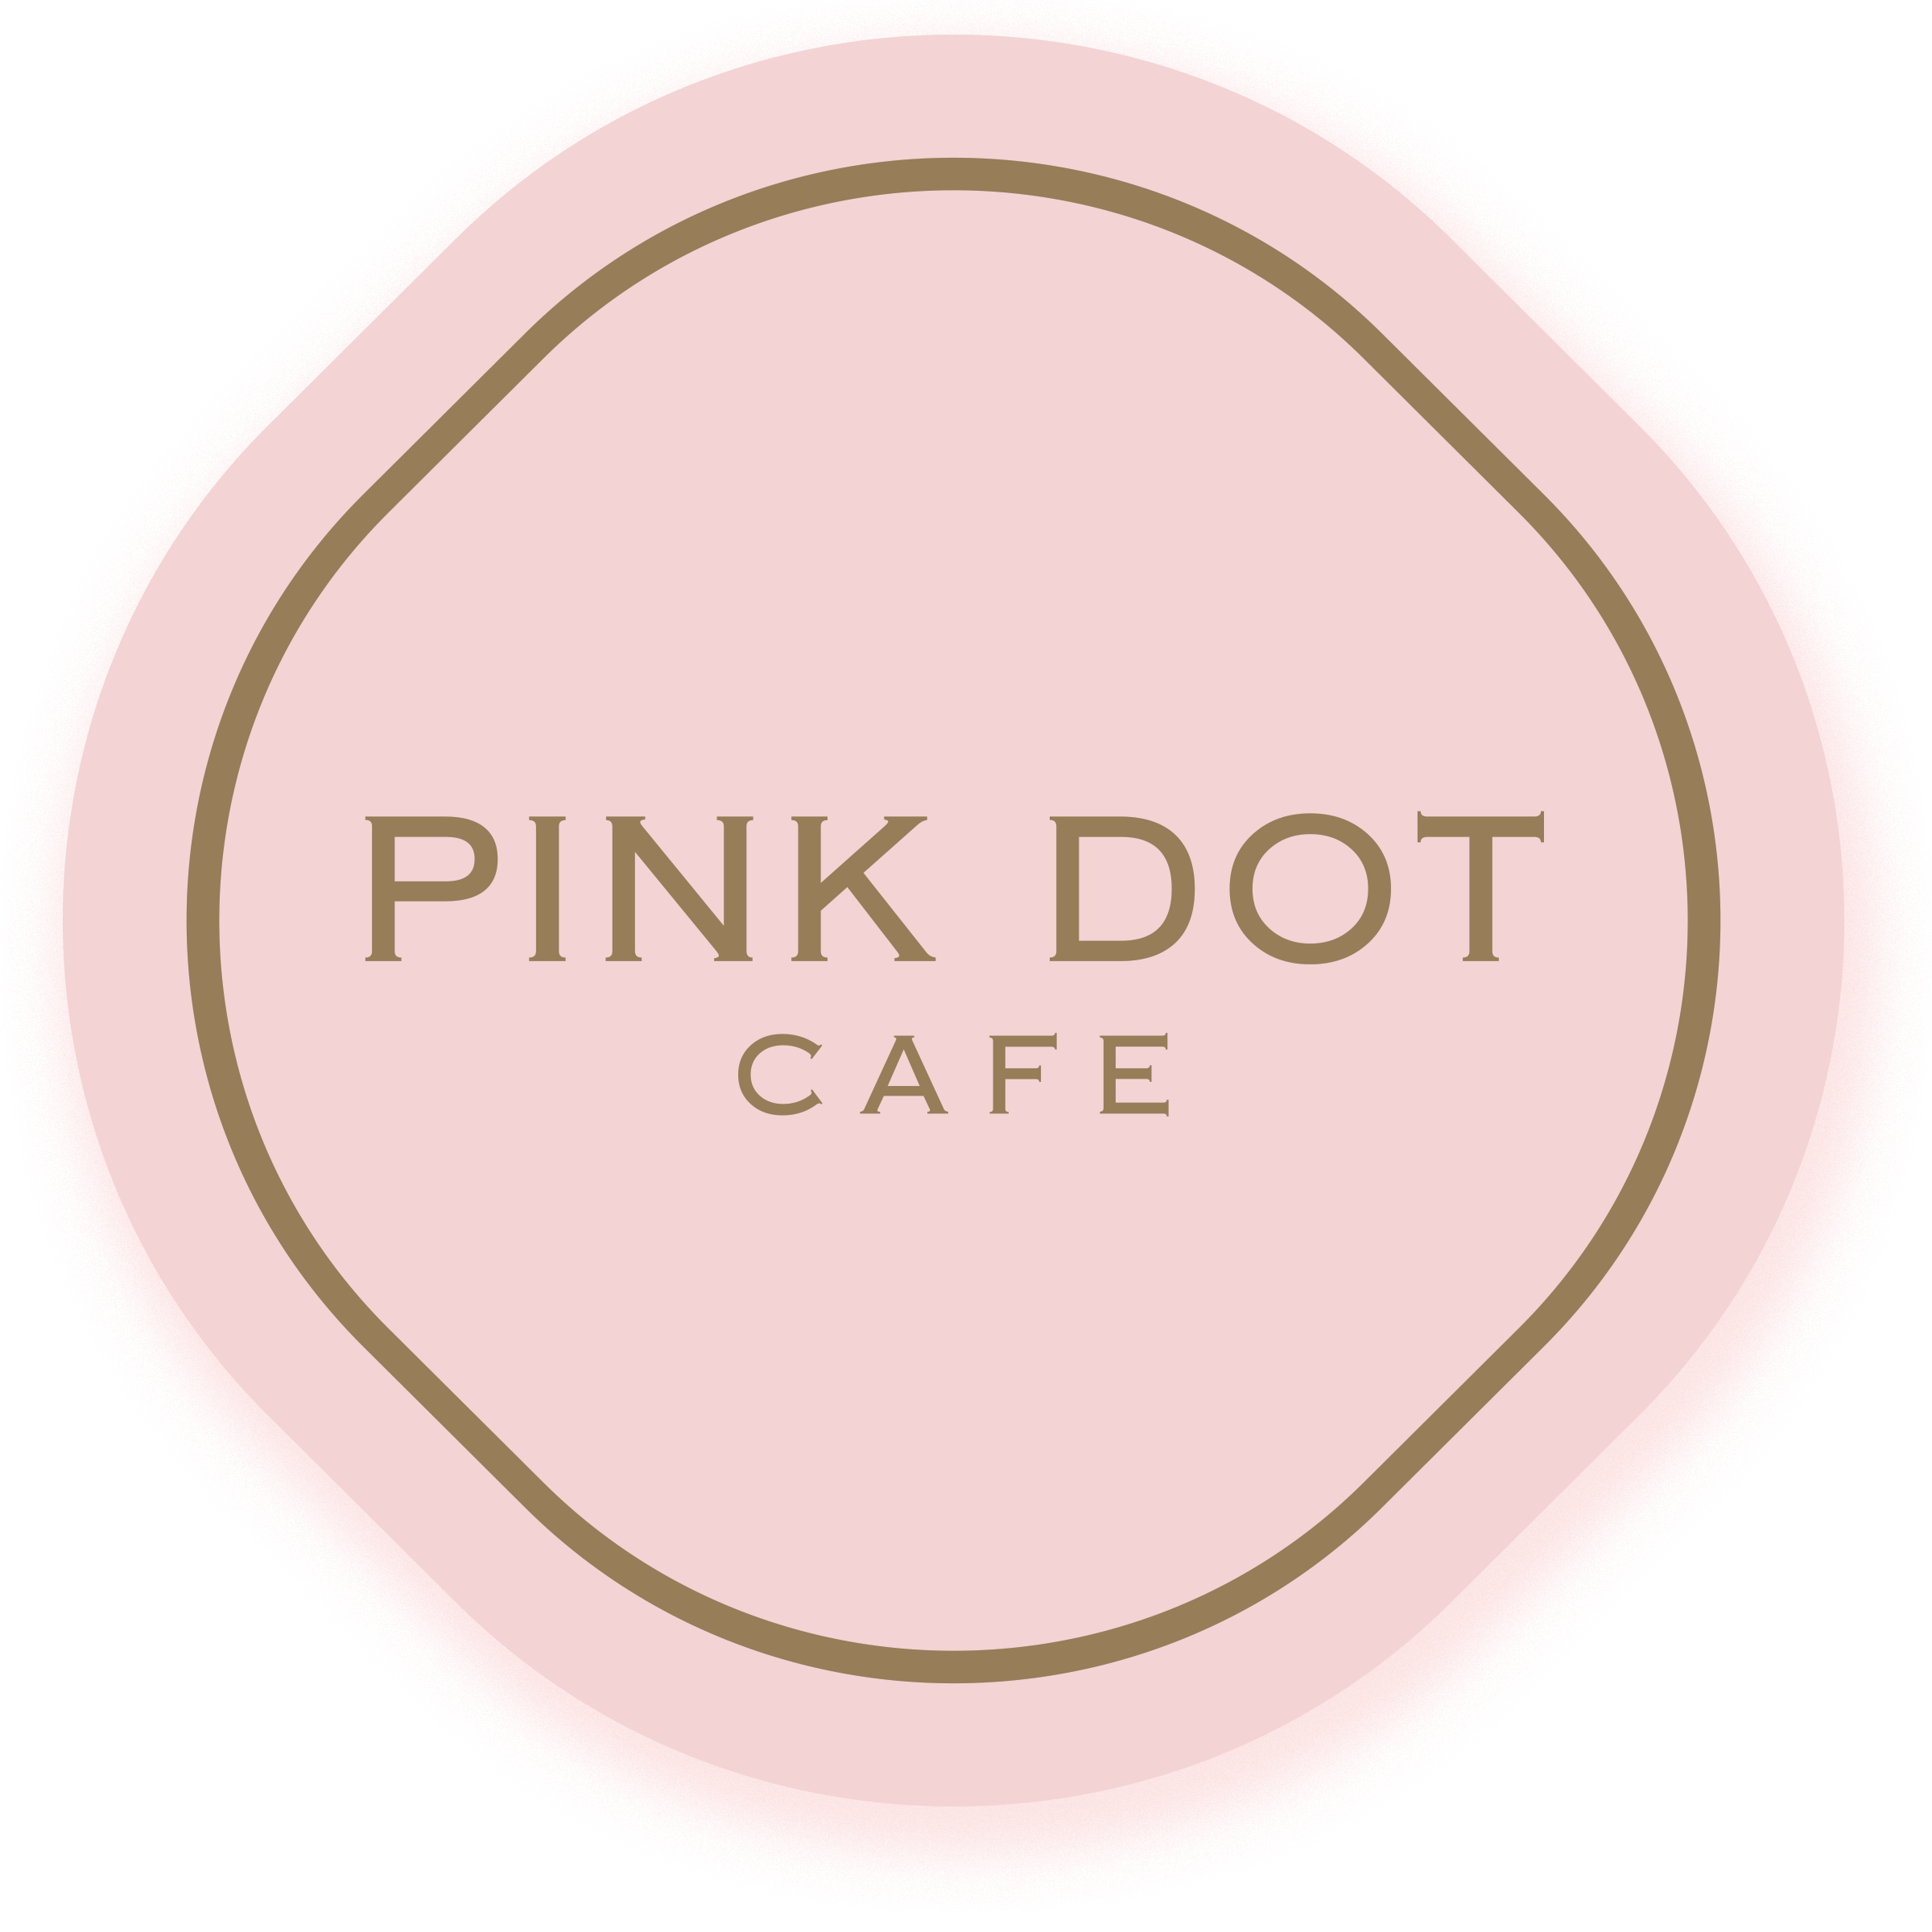 PinkDot Café